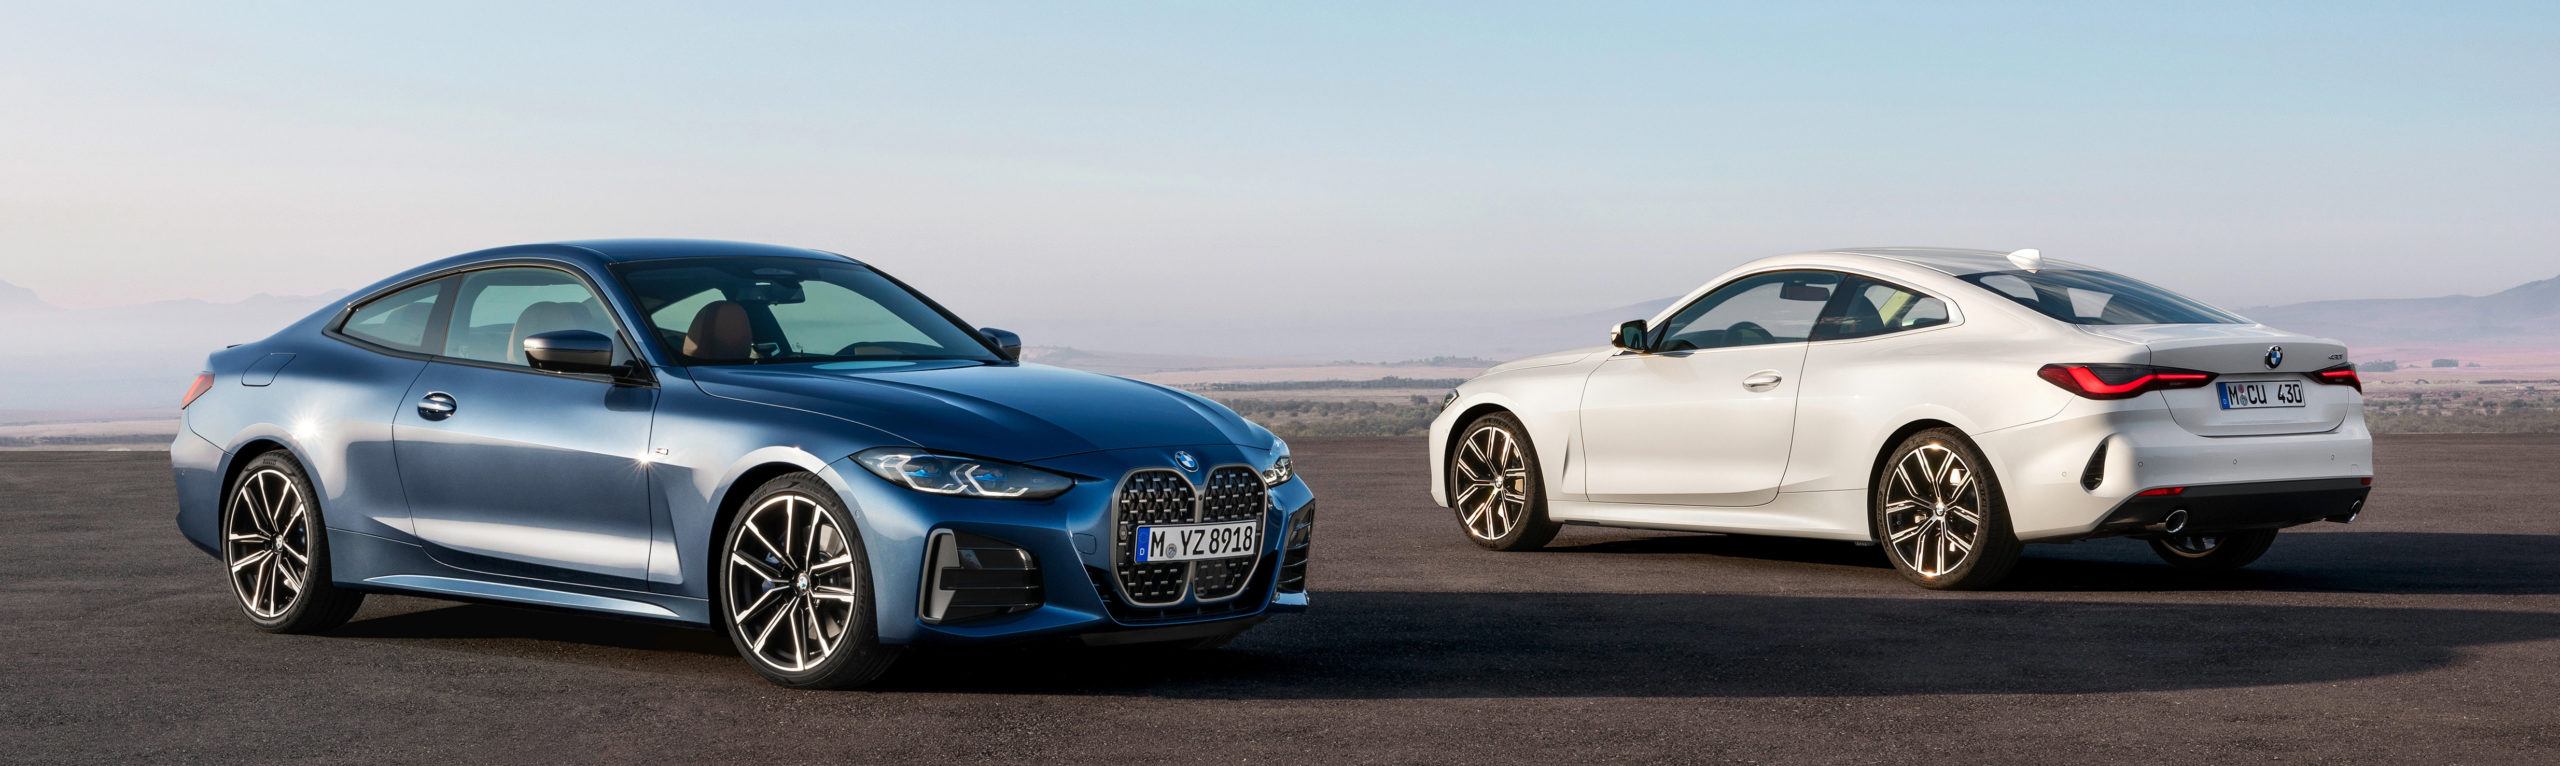 BMW Serie 4 Coupé se presenta y anuncia sus precios